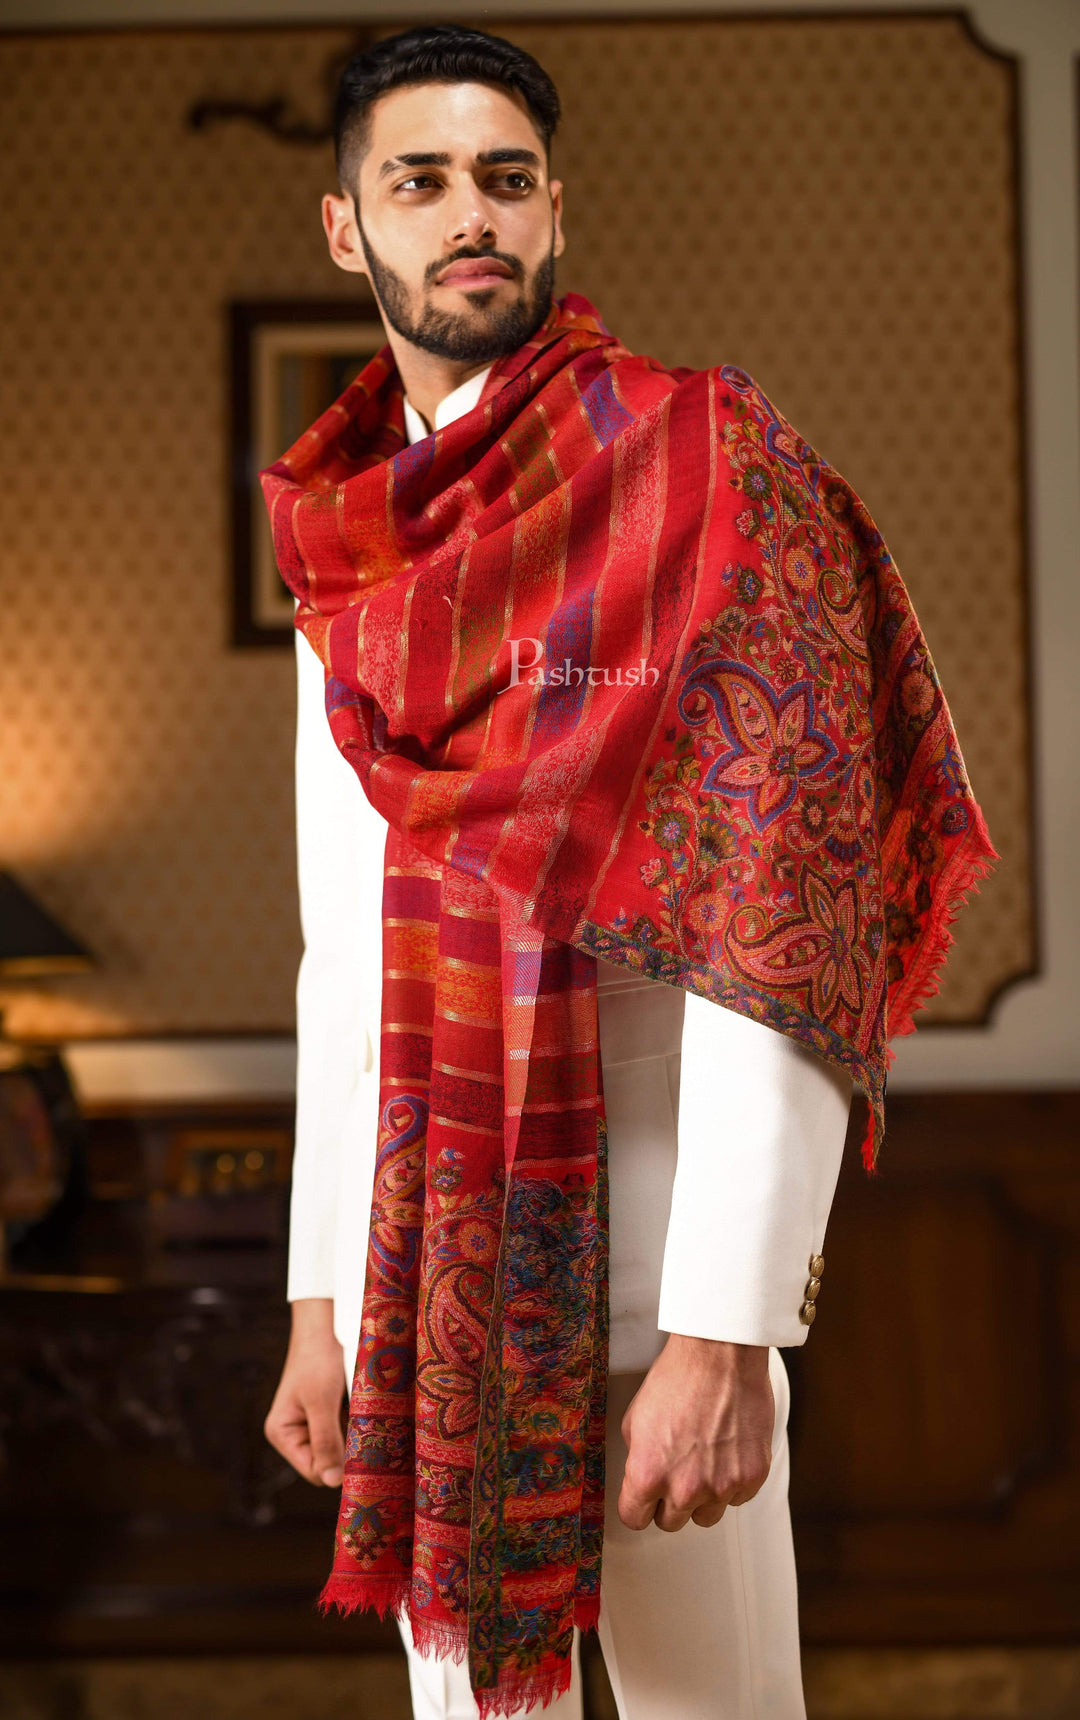 Pashtush India 70x200 Pashtush Mens Pure Wool Striped Ethnic Stole